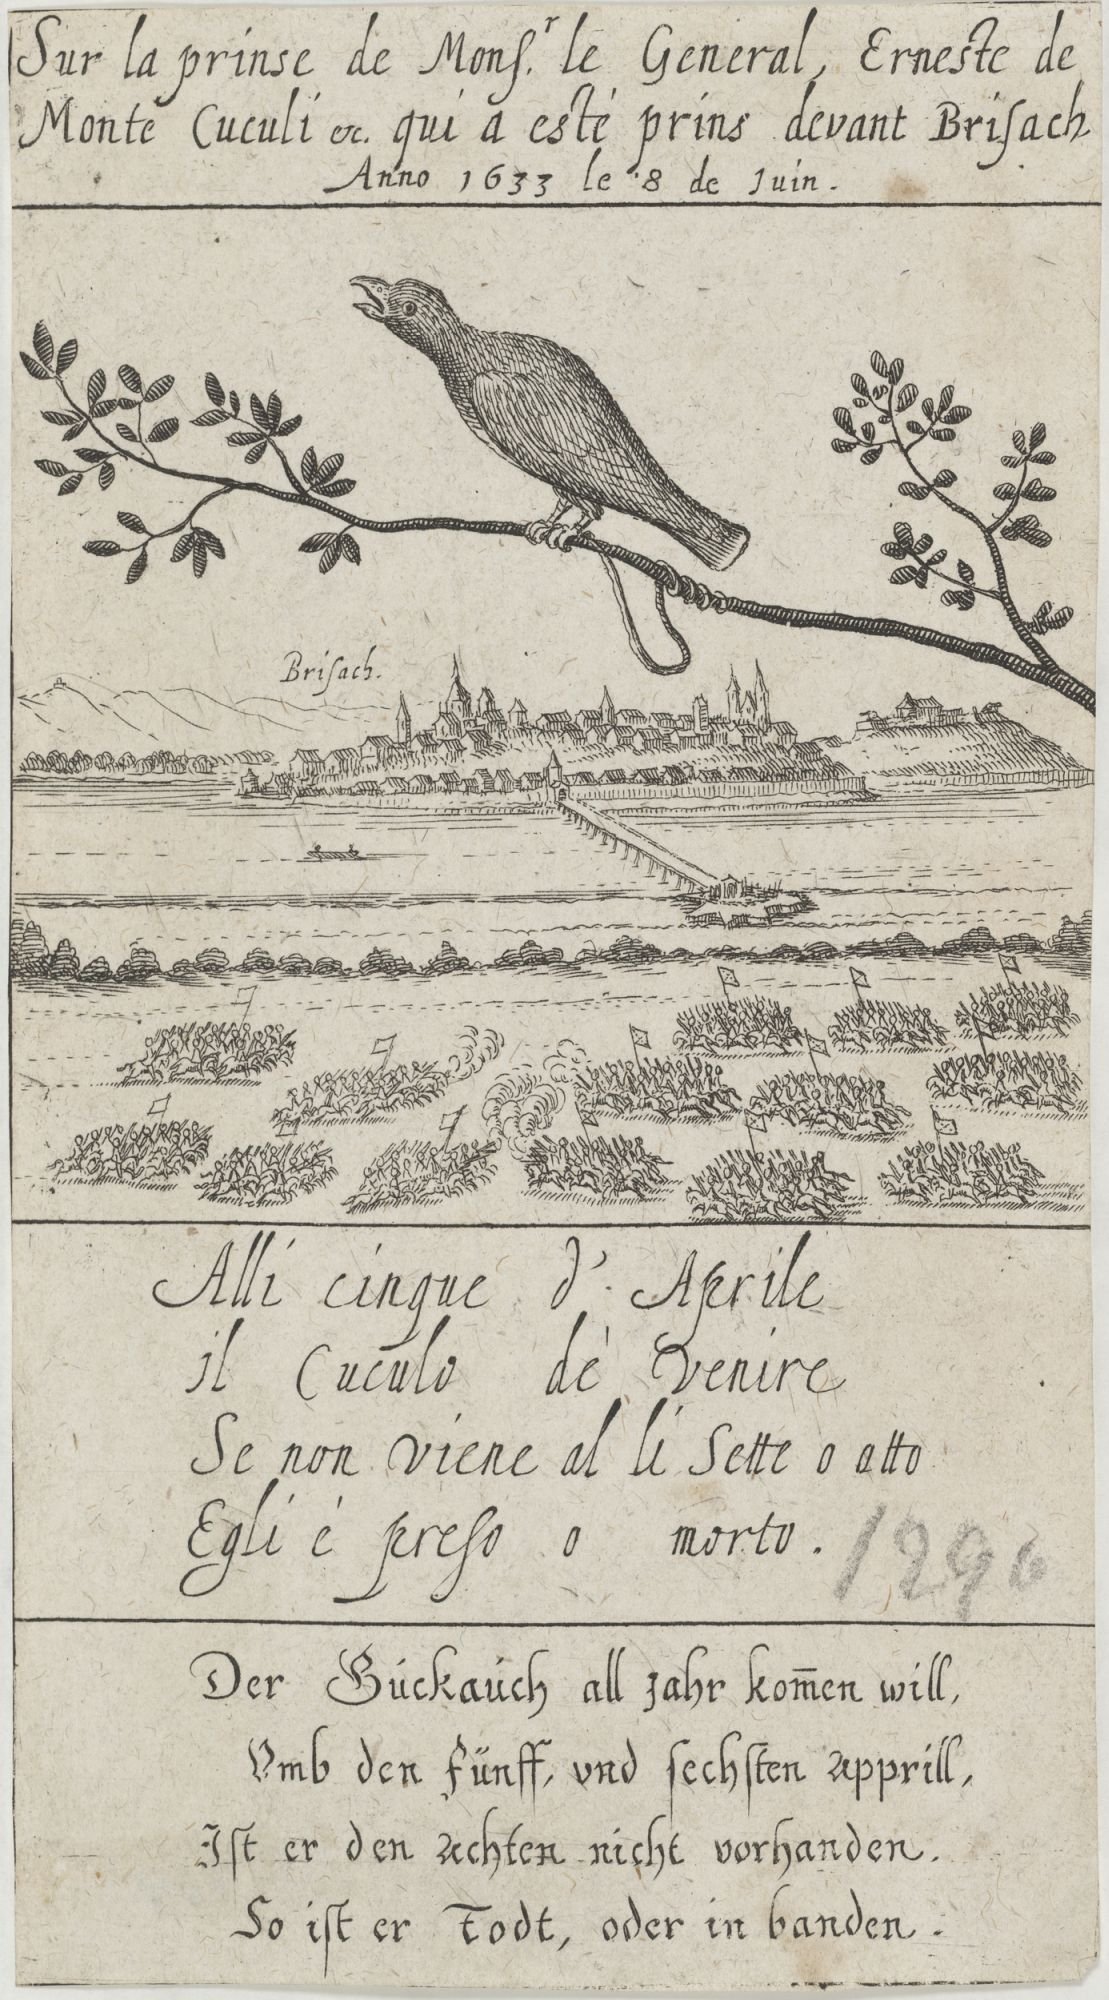 Sur la prinse de Monsr. le General, Erneste de/ Monte Cuculi etc. qui a esté prins devant Brisach/ Anno 1633 le 8 de juin. (Kulturstiftung Sachsen-Anhalt Public Domain Mark)